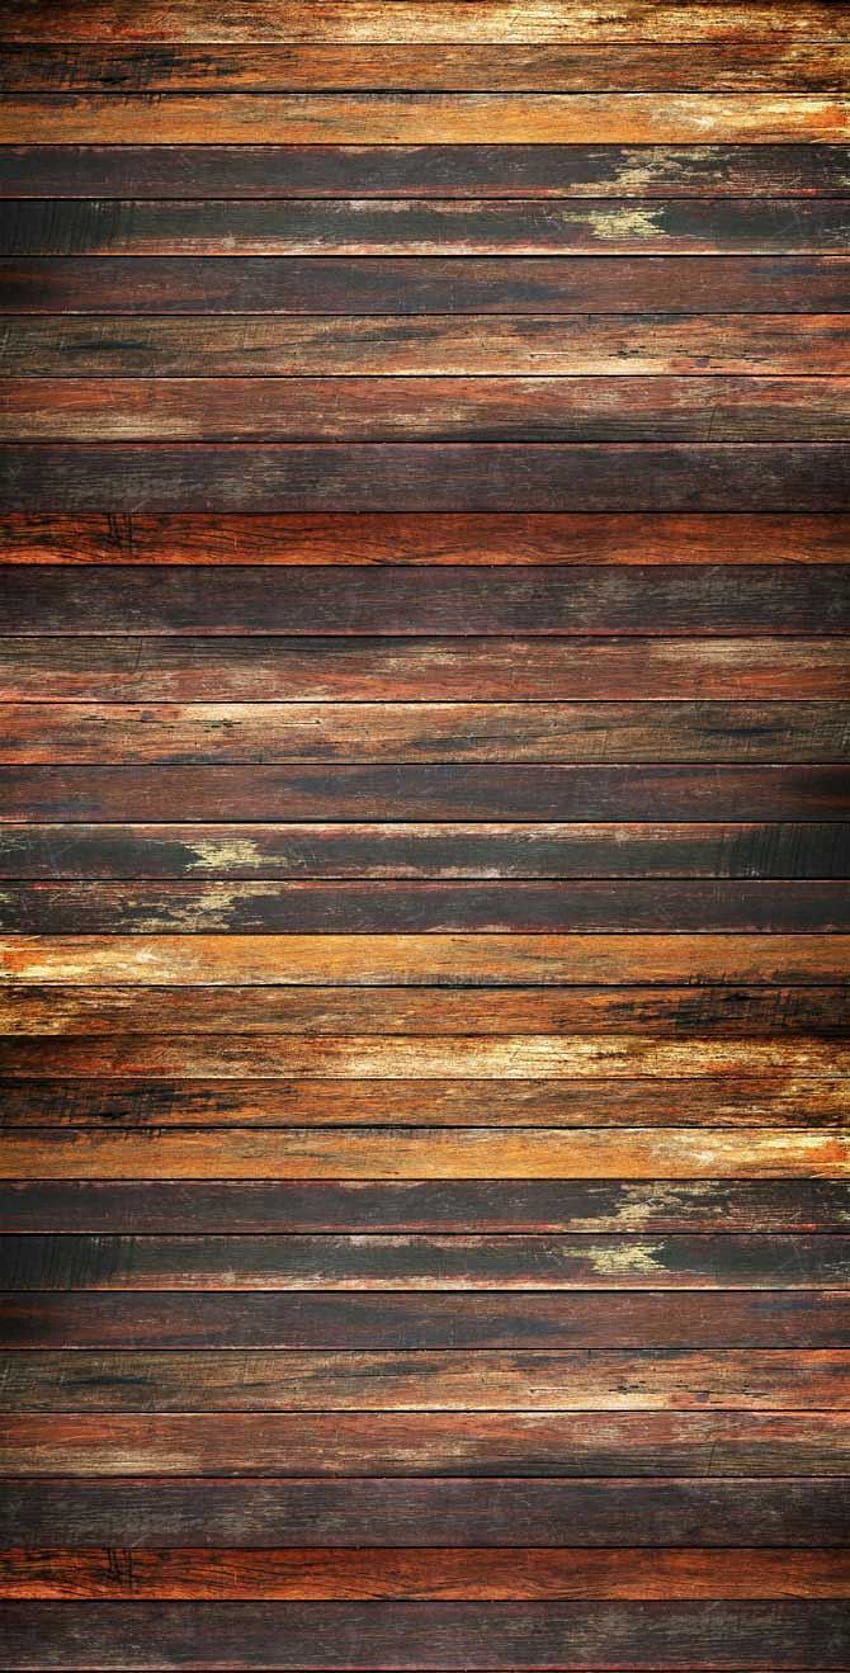 Khám phá phông nền gỗ thẩm mỹ với kiểu dáng tuyệt đẹp, với đường vân tự nhiên tinh tế. Cho phép hình ảnh của bạn nổi bật trên một nền gỗ đầy quyền lực và nổi bật.